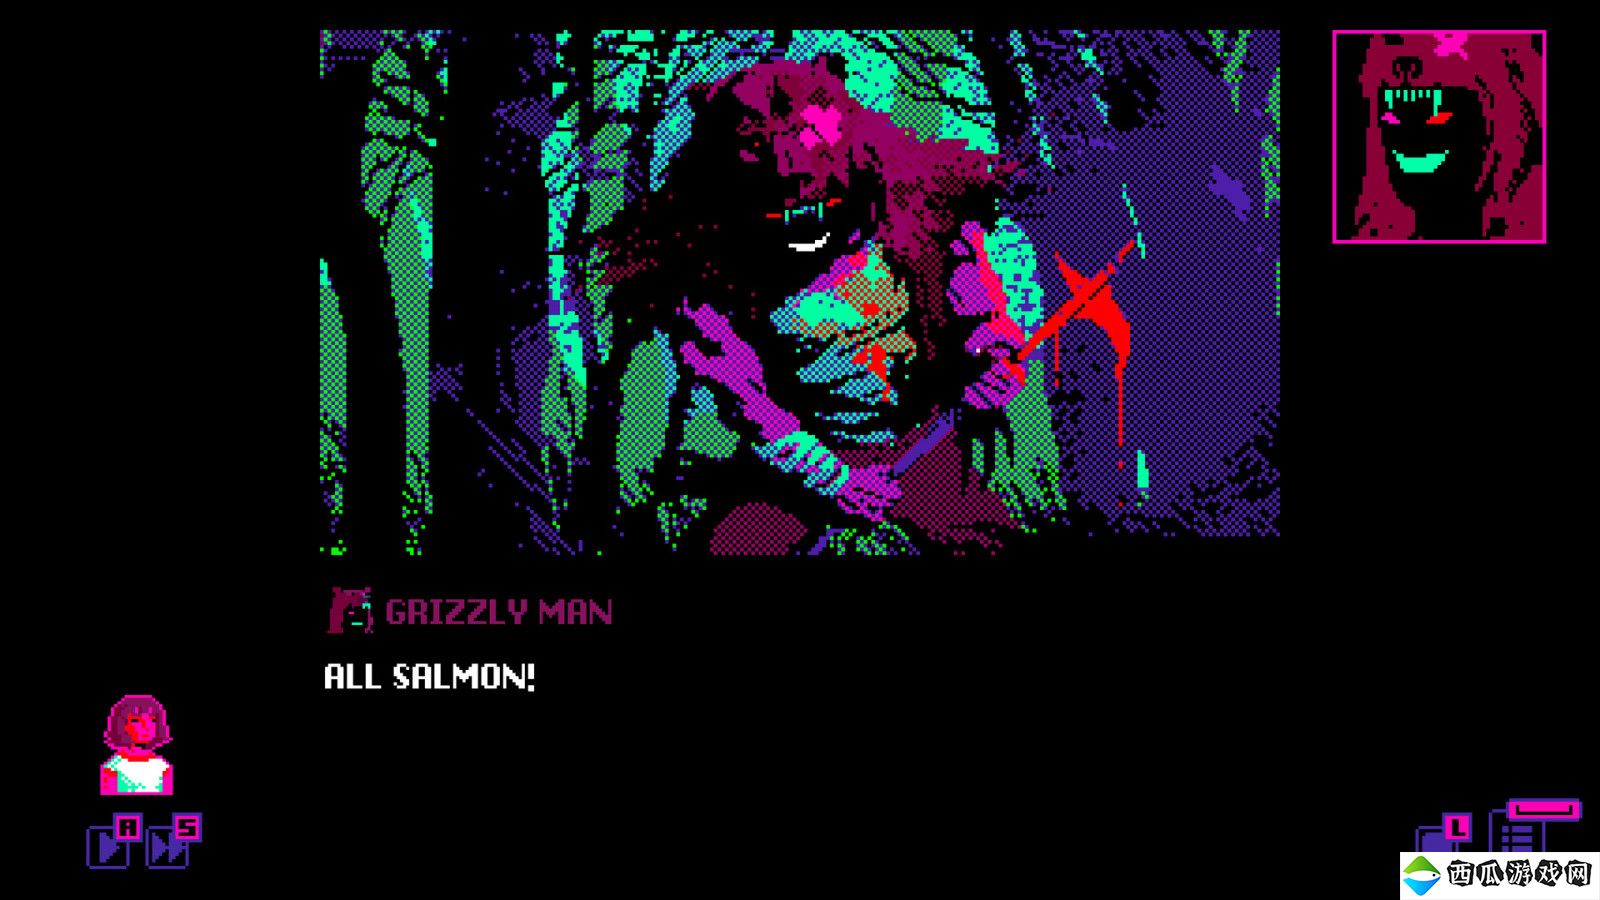 互动冒险游戏《Grizzly Man》Steam页面开放 发行日期待定